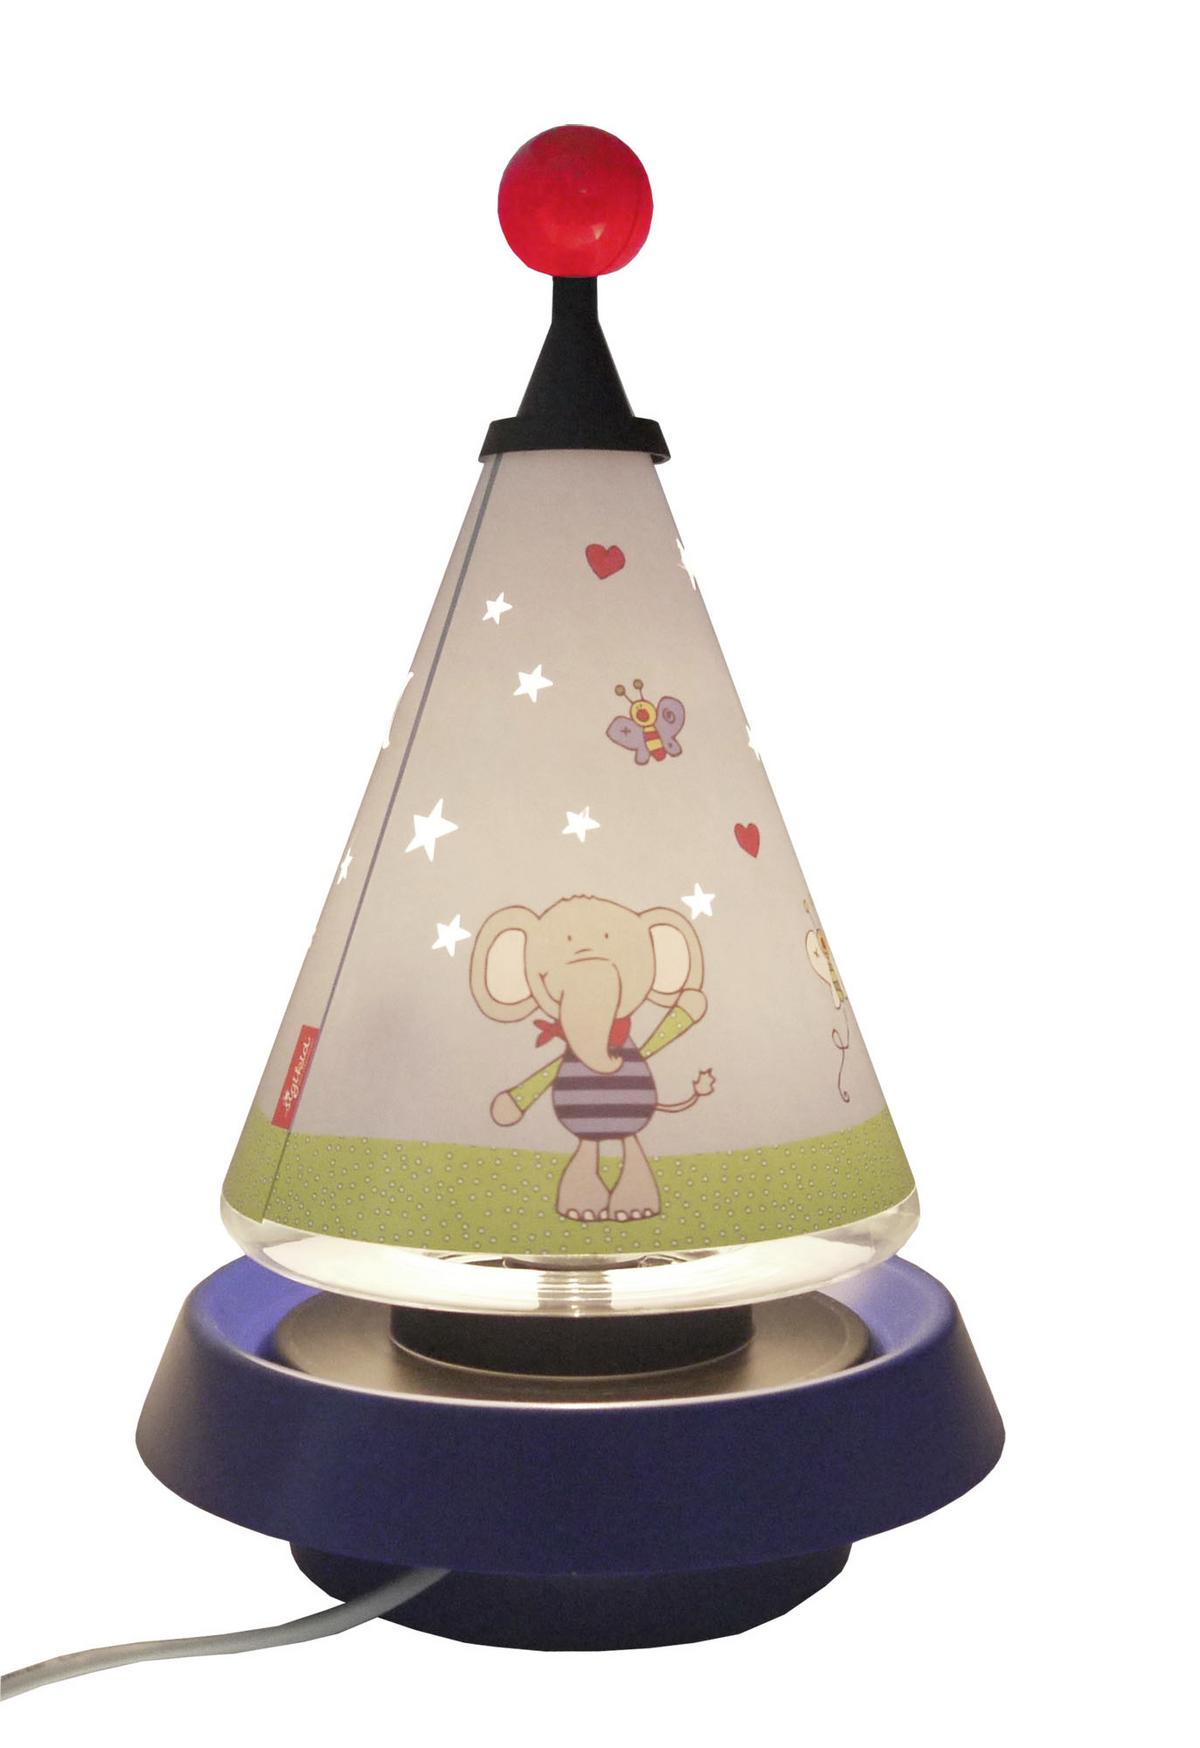 Lampe für ein Kind. LKW - Sparschwein 4112425